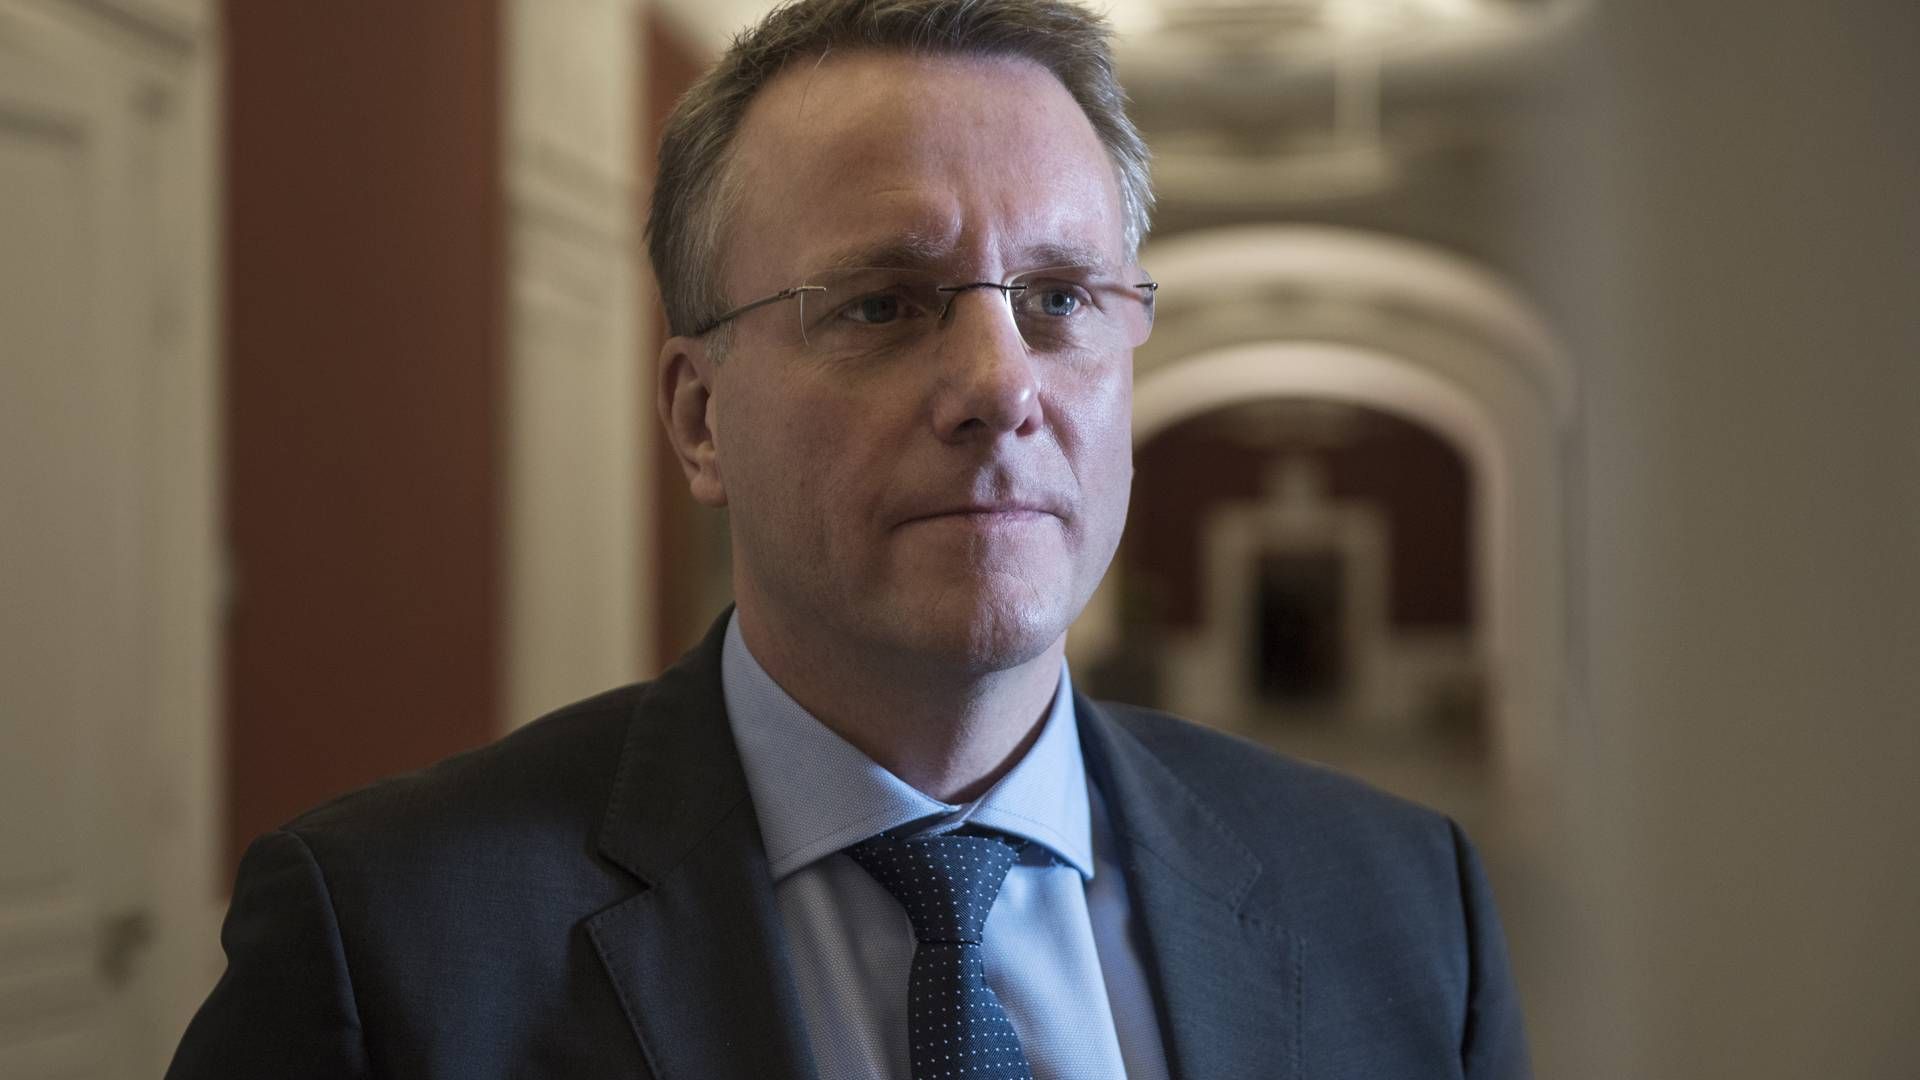 Skatteminister Morten Bødskov (S). | Foto: Sofie Mathiassen//